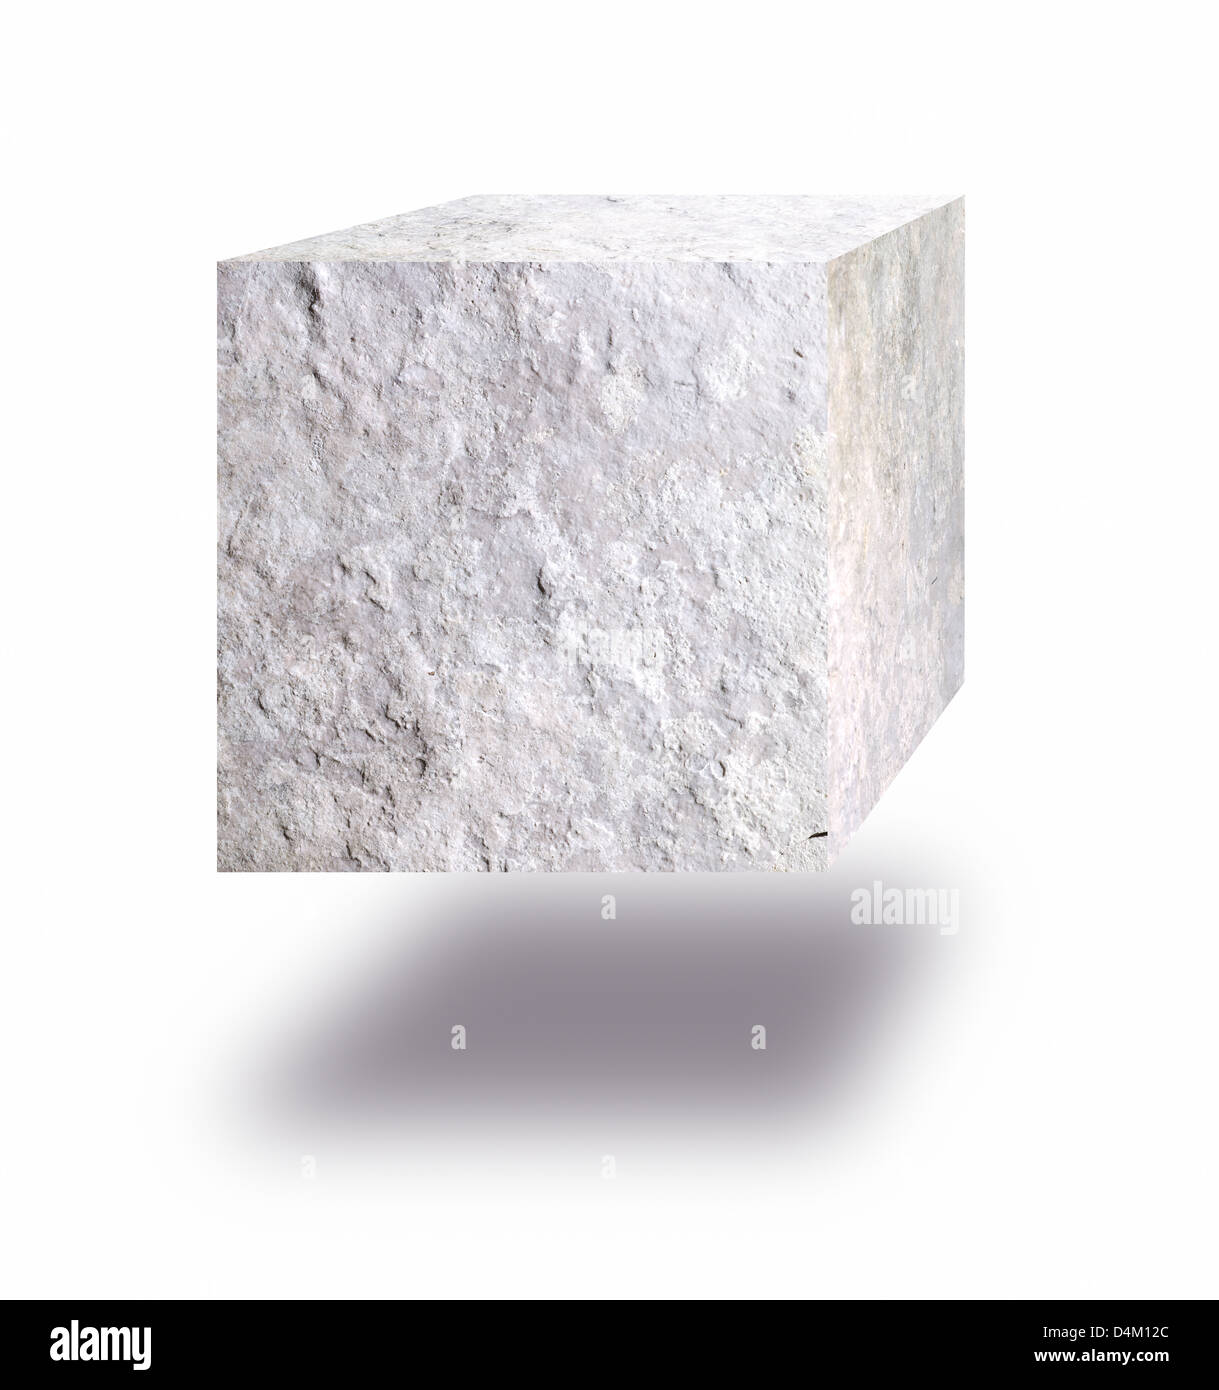 Cube de pierre flottant dans l'air contre fond blanc Banque D'Images